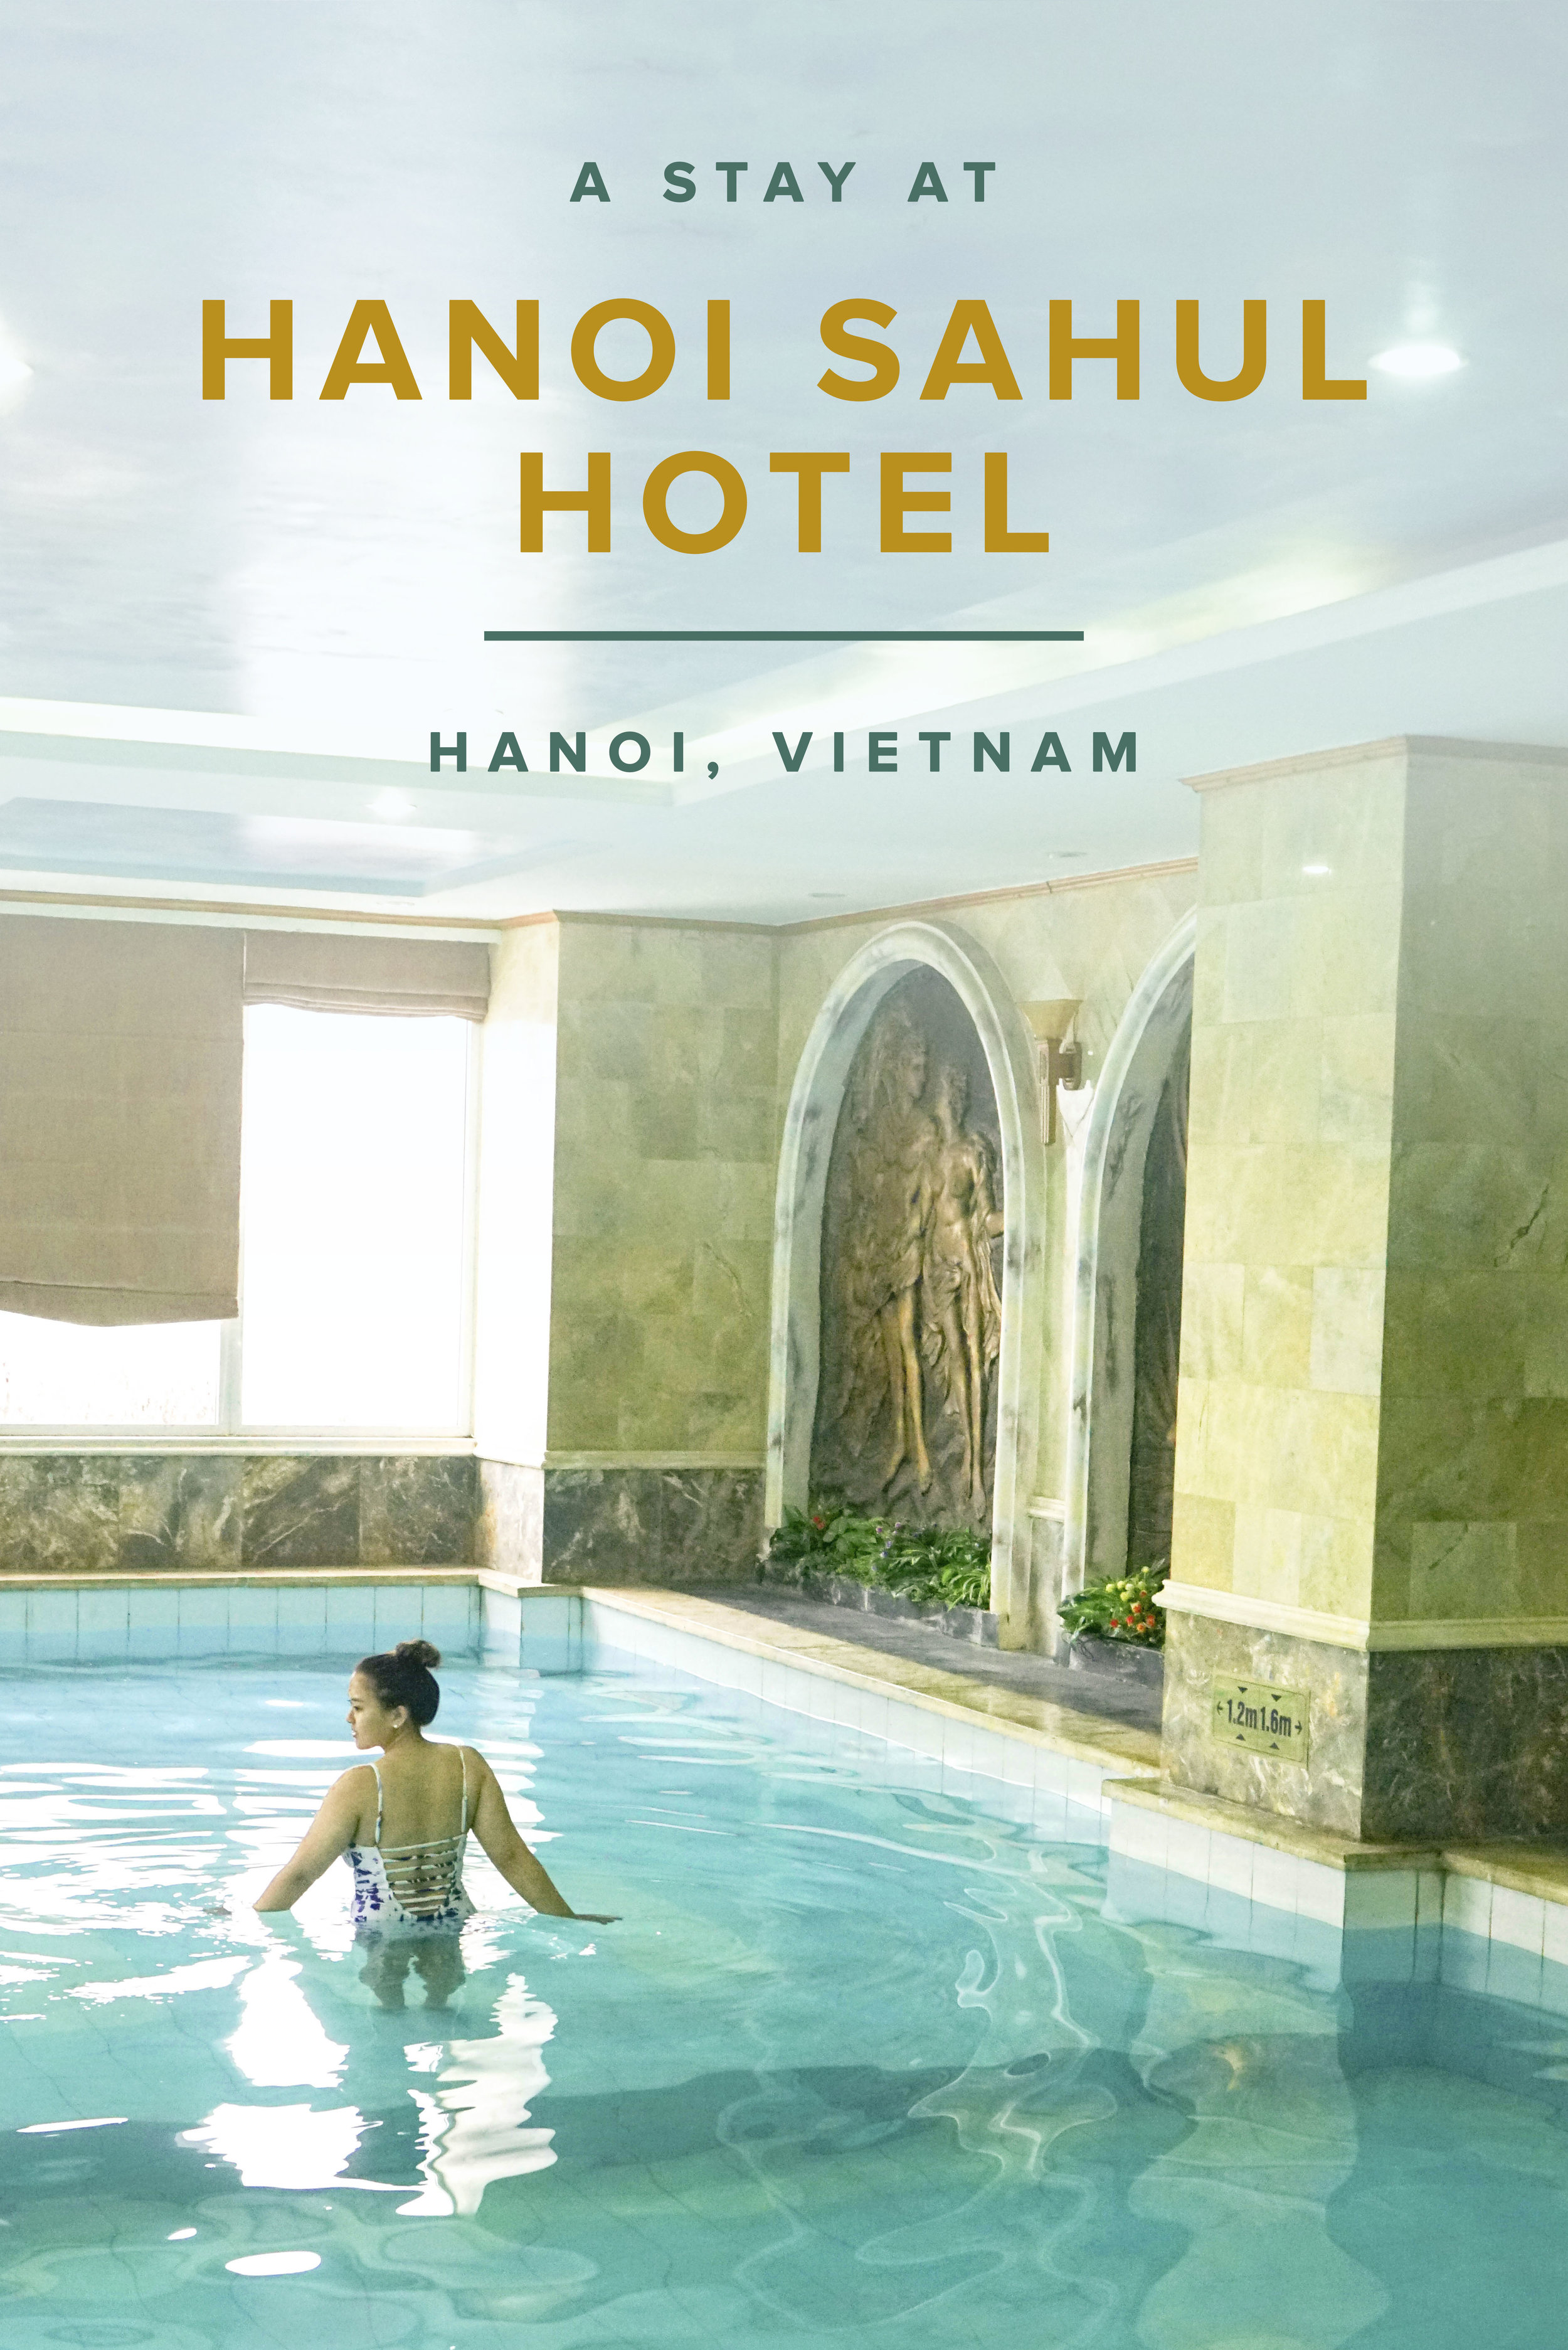 Hotel Hanoi Sahul | Vietnam